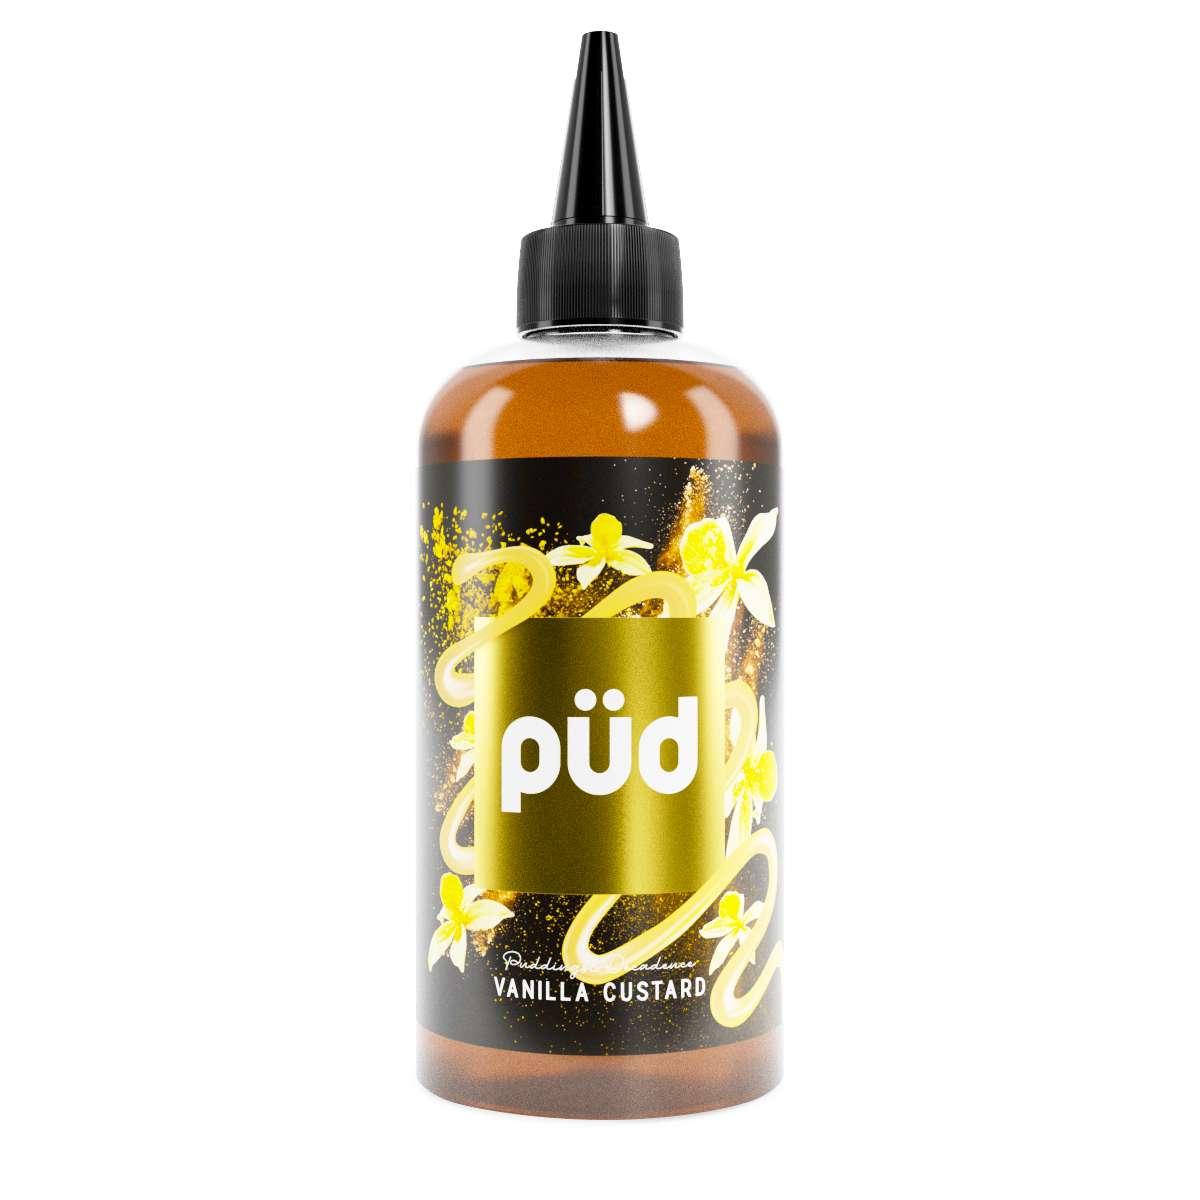 Pud -  Vanilla Custard - 200ml